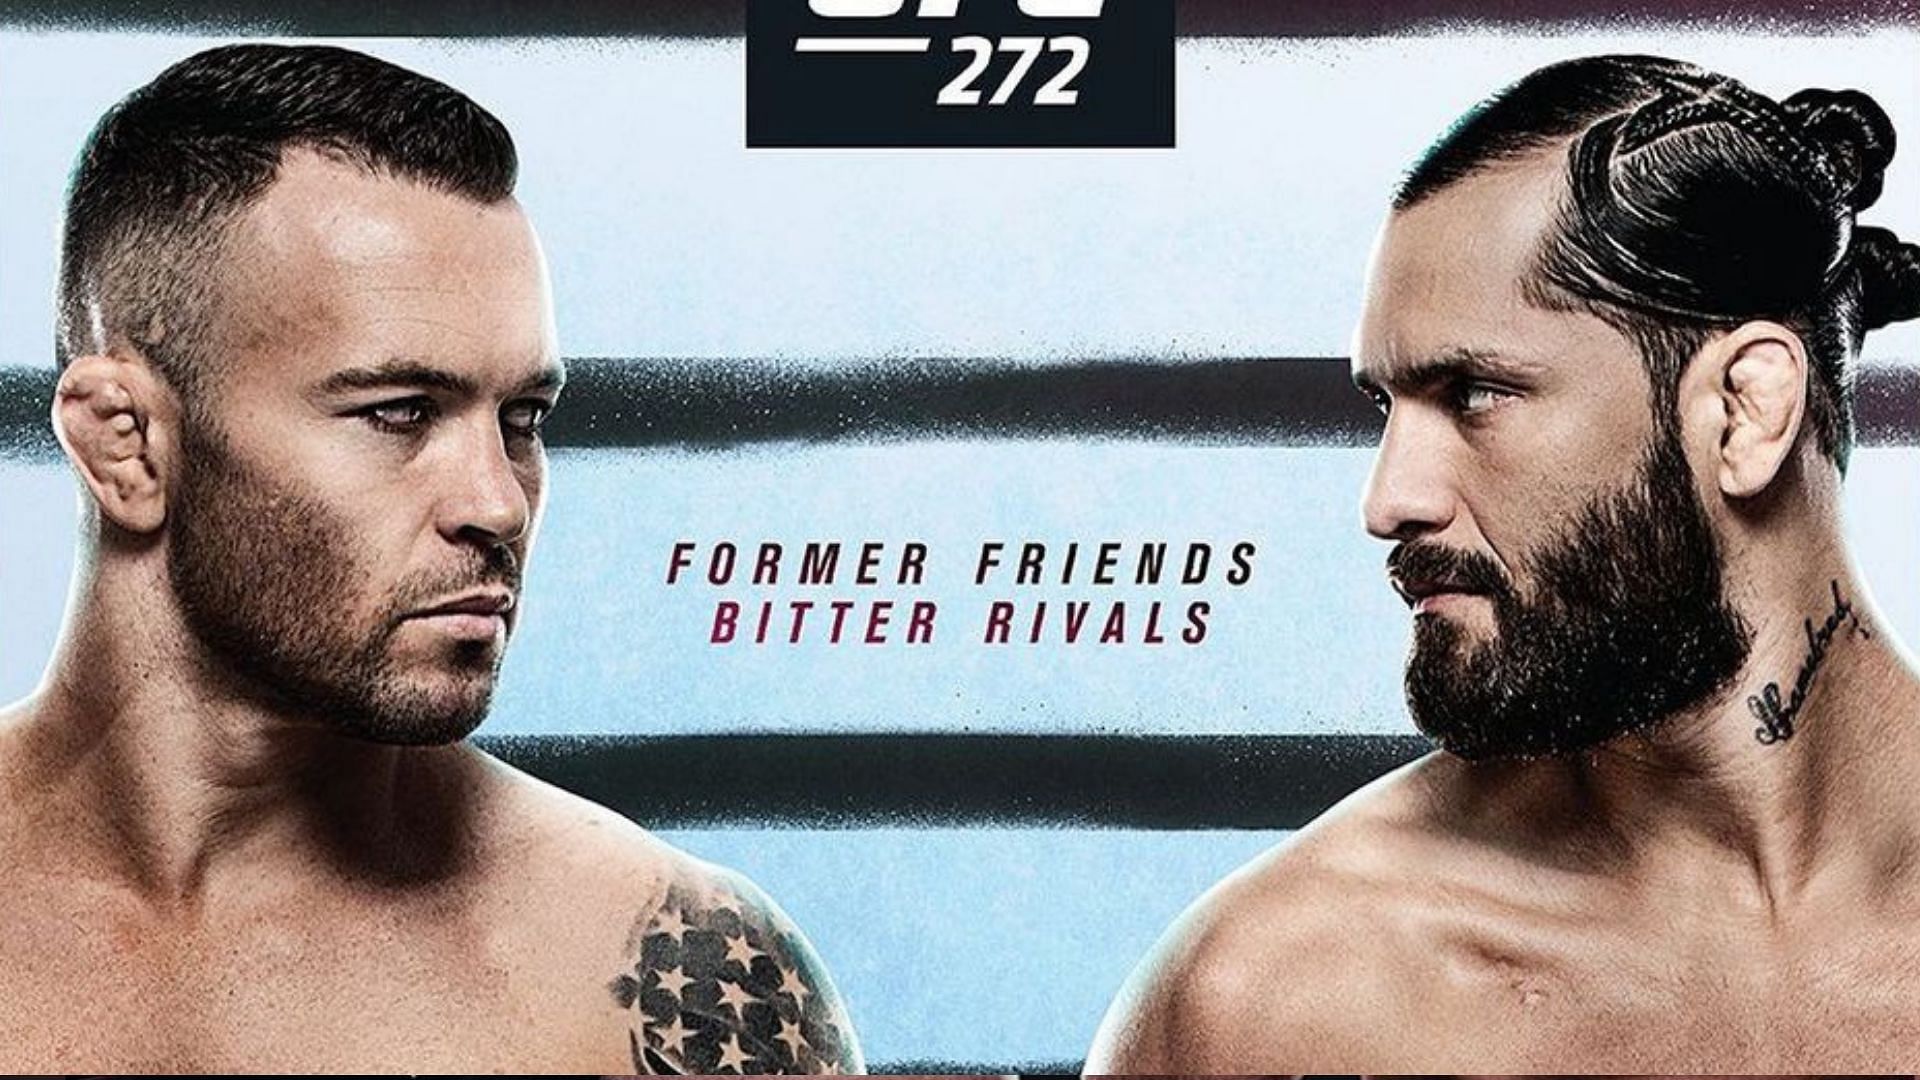 UFC 272: Covington vs. Masvidal (Image courtesy of UFC Instagram)